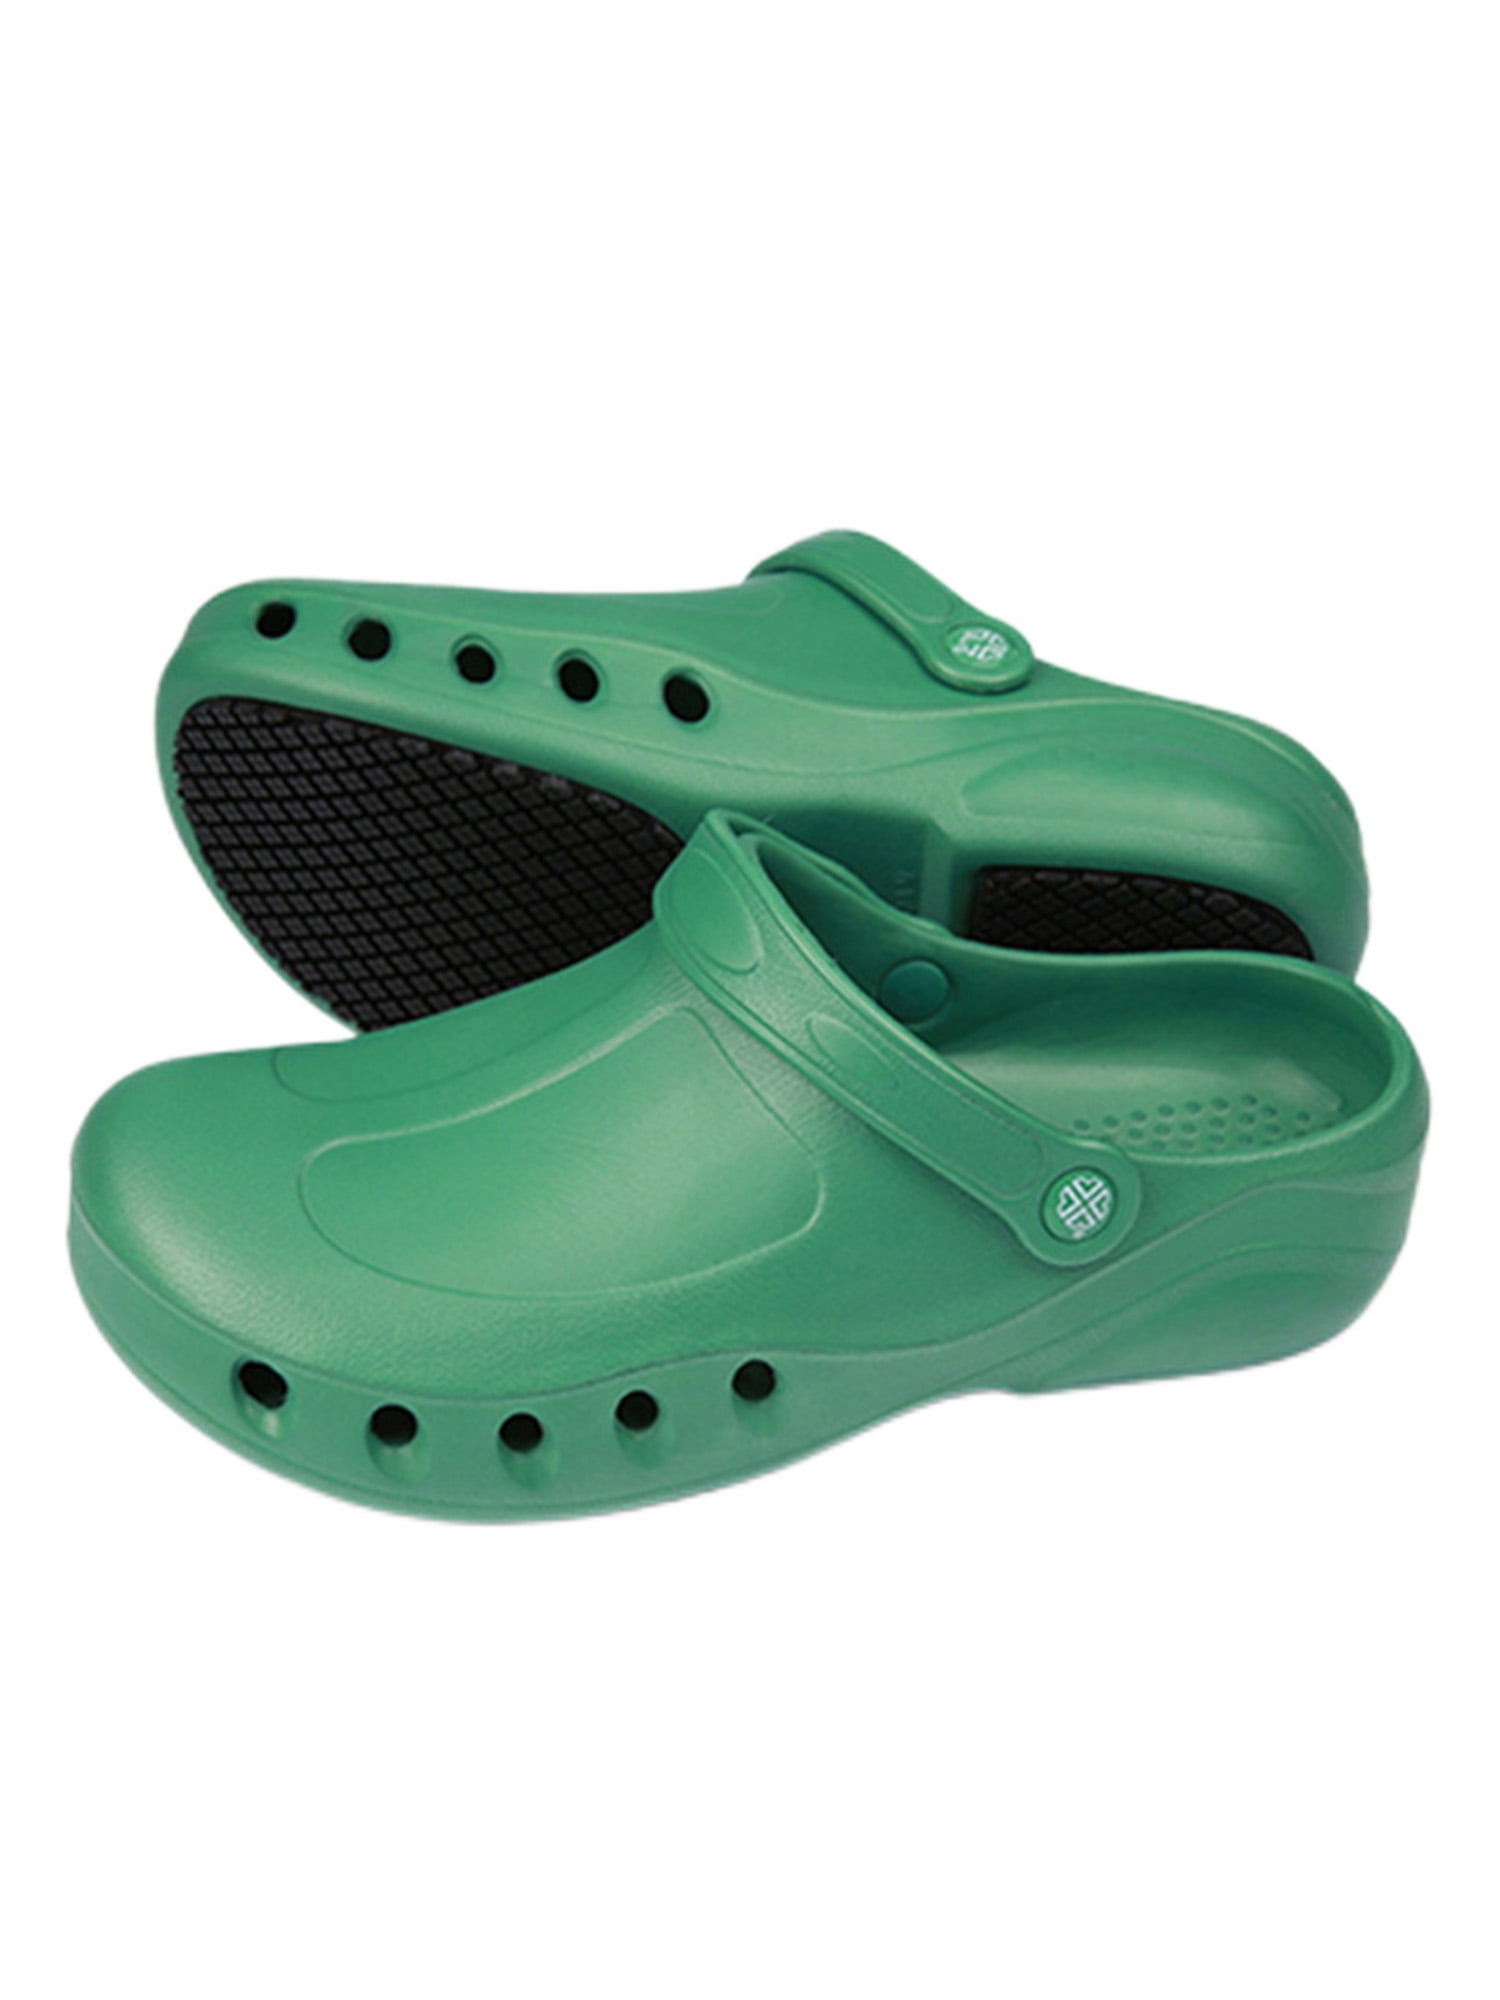 11D Bath Slippers Mules Shoes New Men's Clogs Beach Shoes 